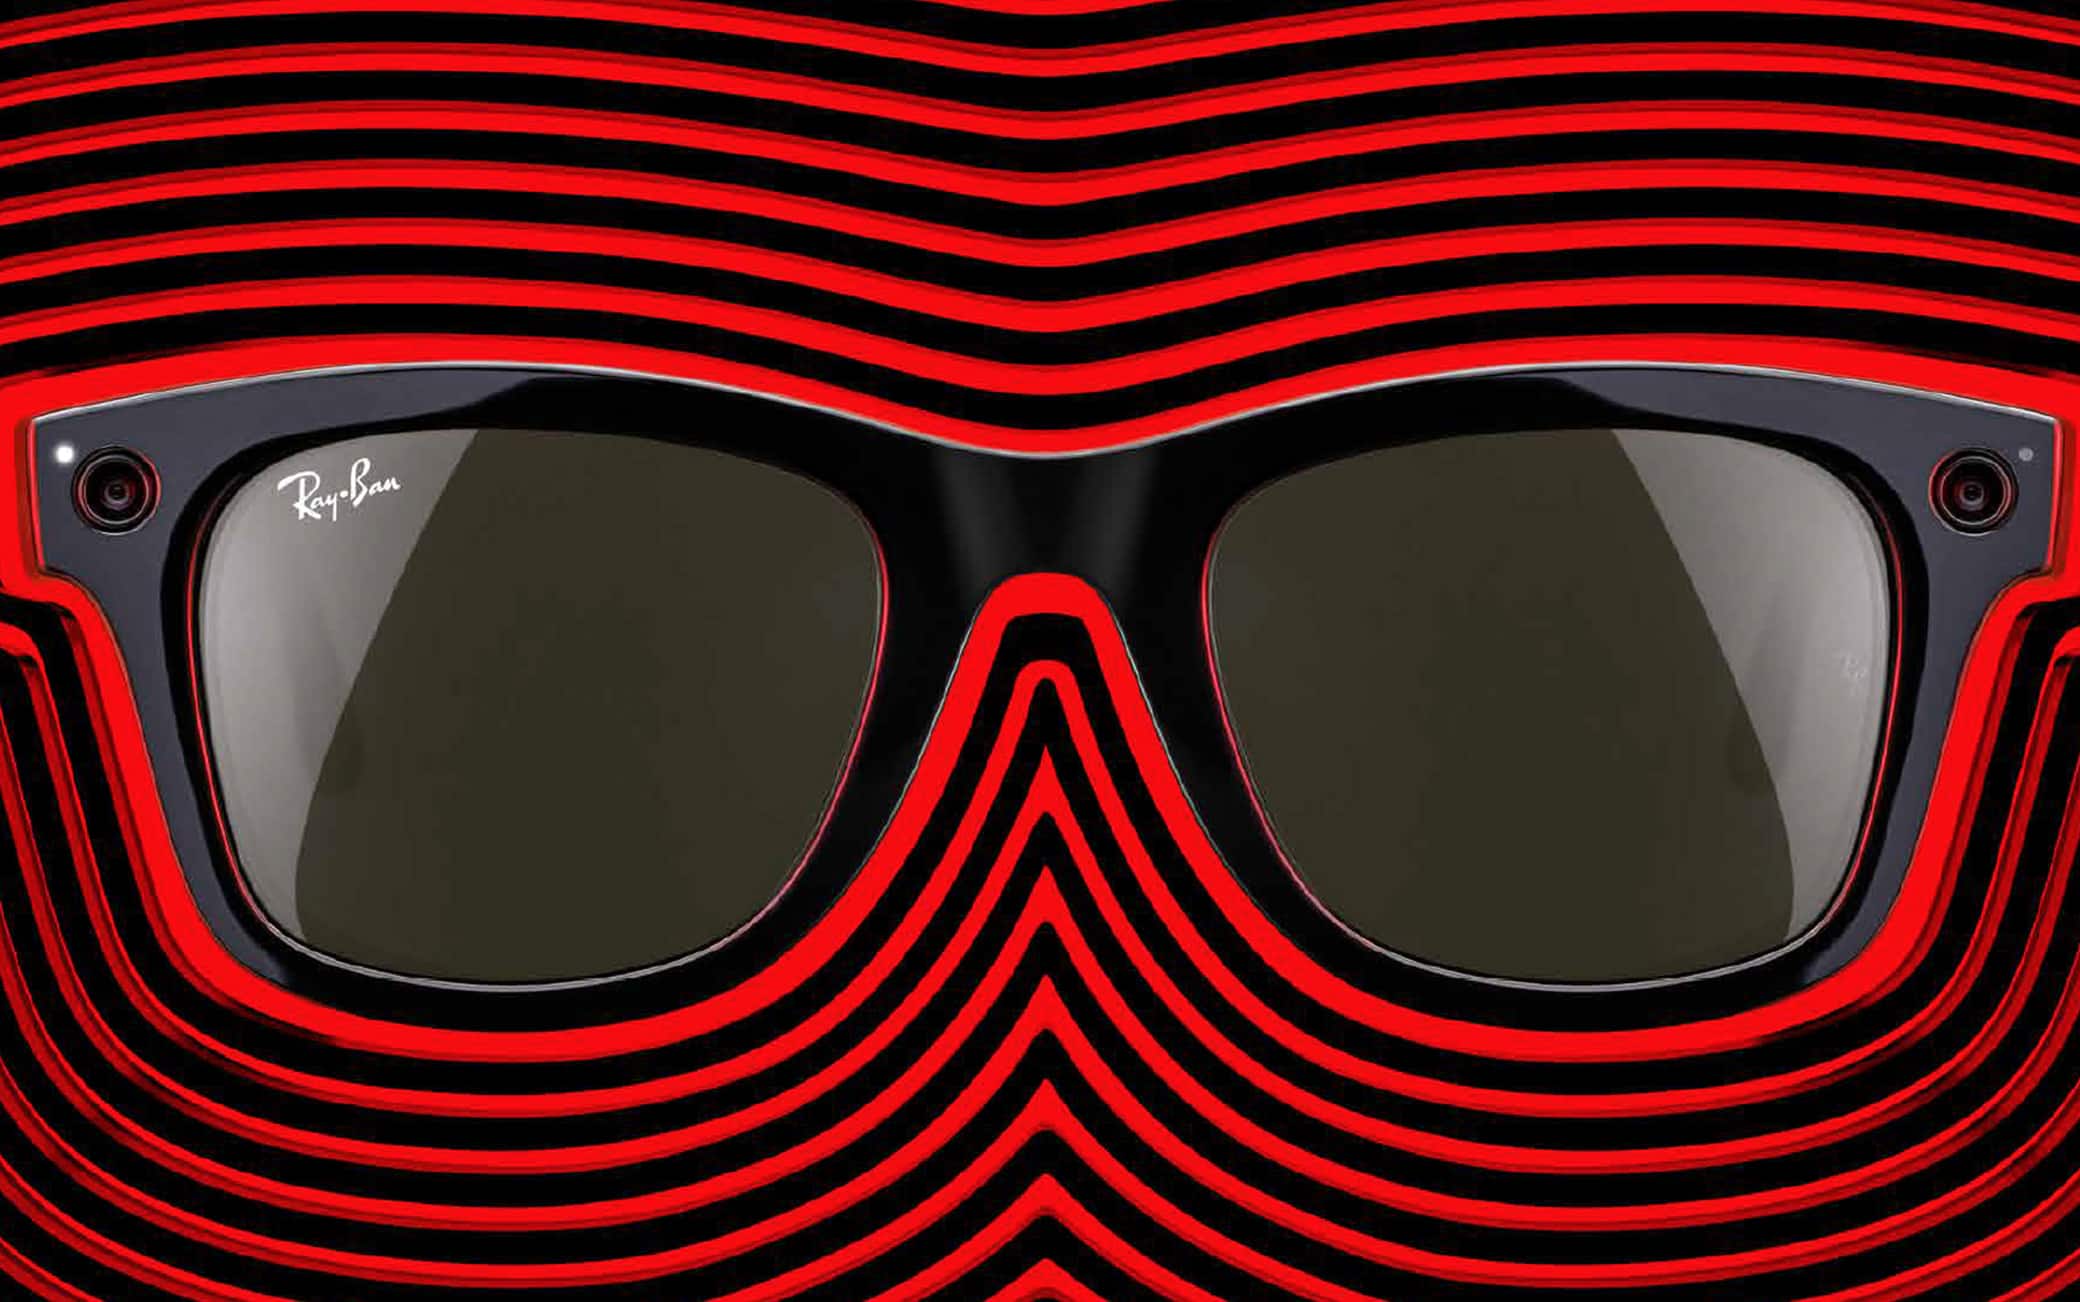 Recensione occhiali smart Ray-Ban Stories: funzioni, prove